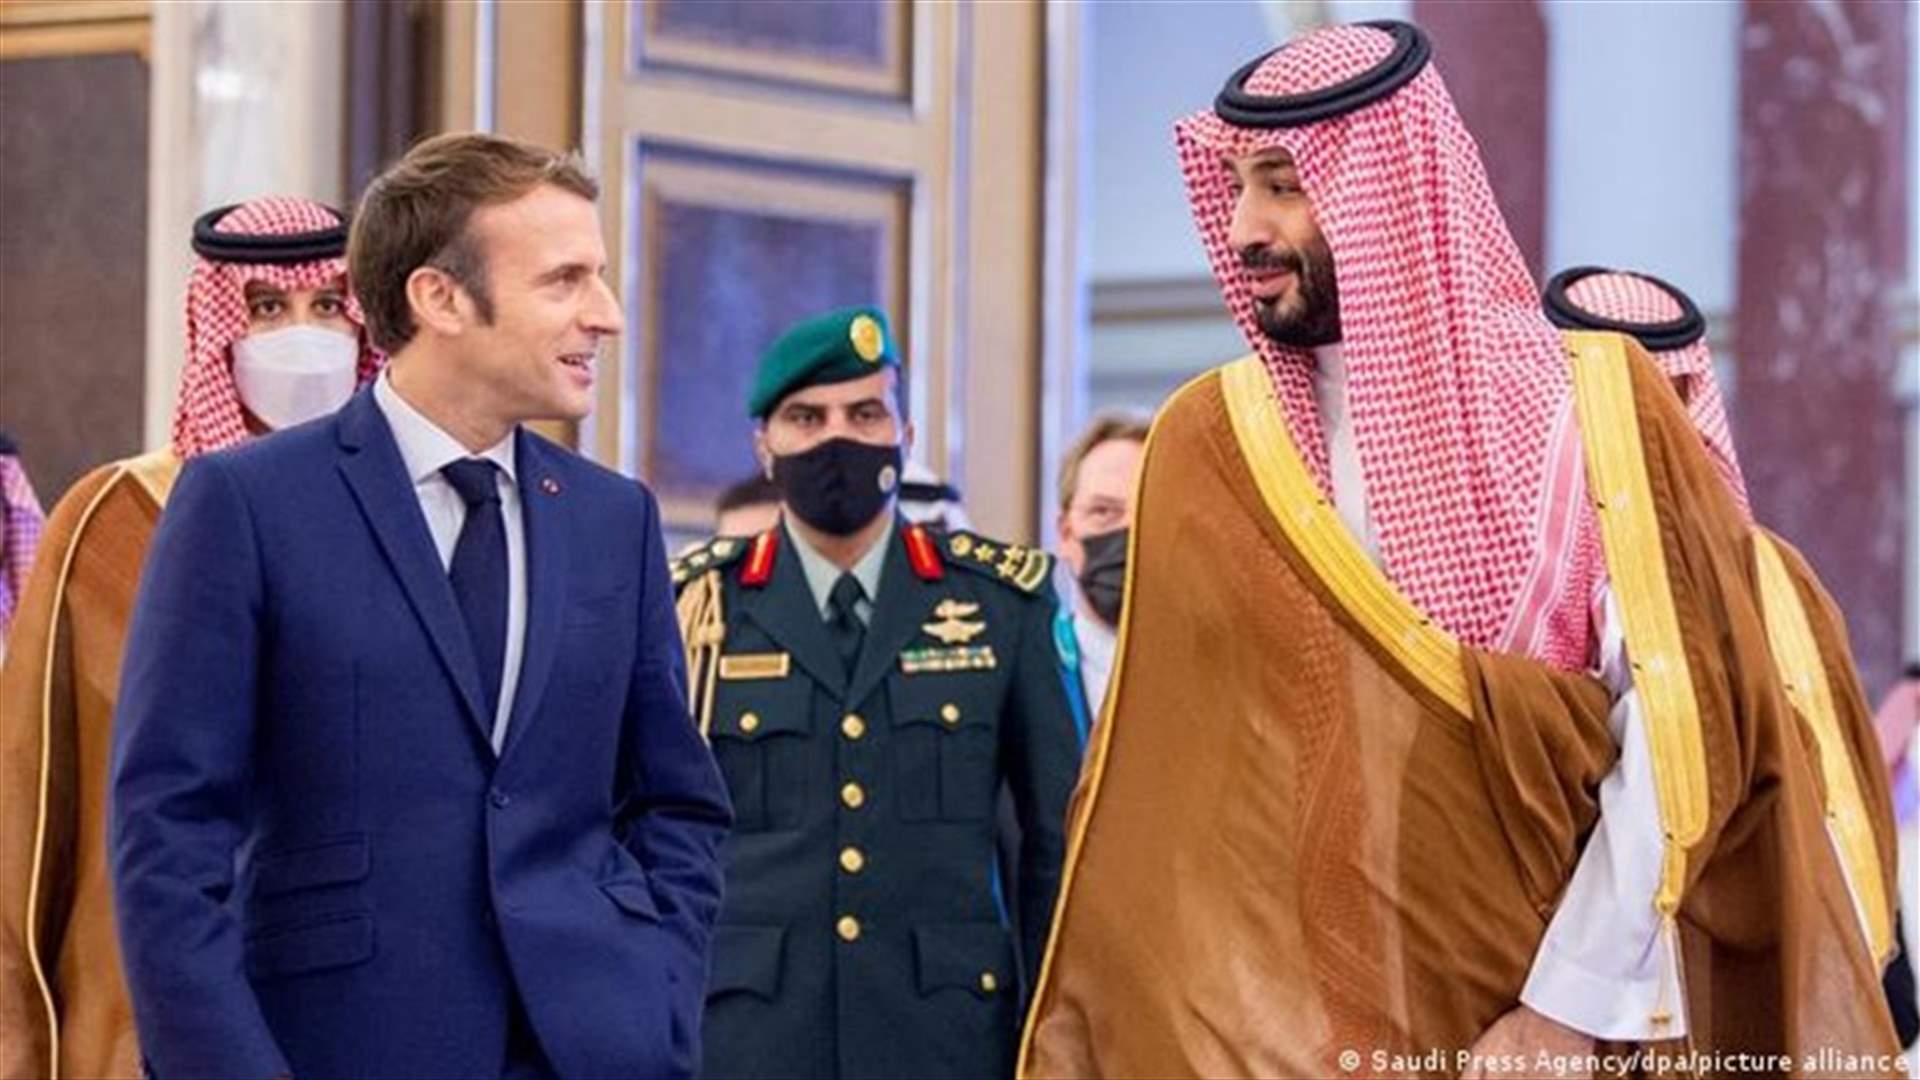 الرئيس الفرنسي وولي العهد السعودي يدعوان لبنان الى القيام بـ&quot;إصلاحات هيكلية&quot;